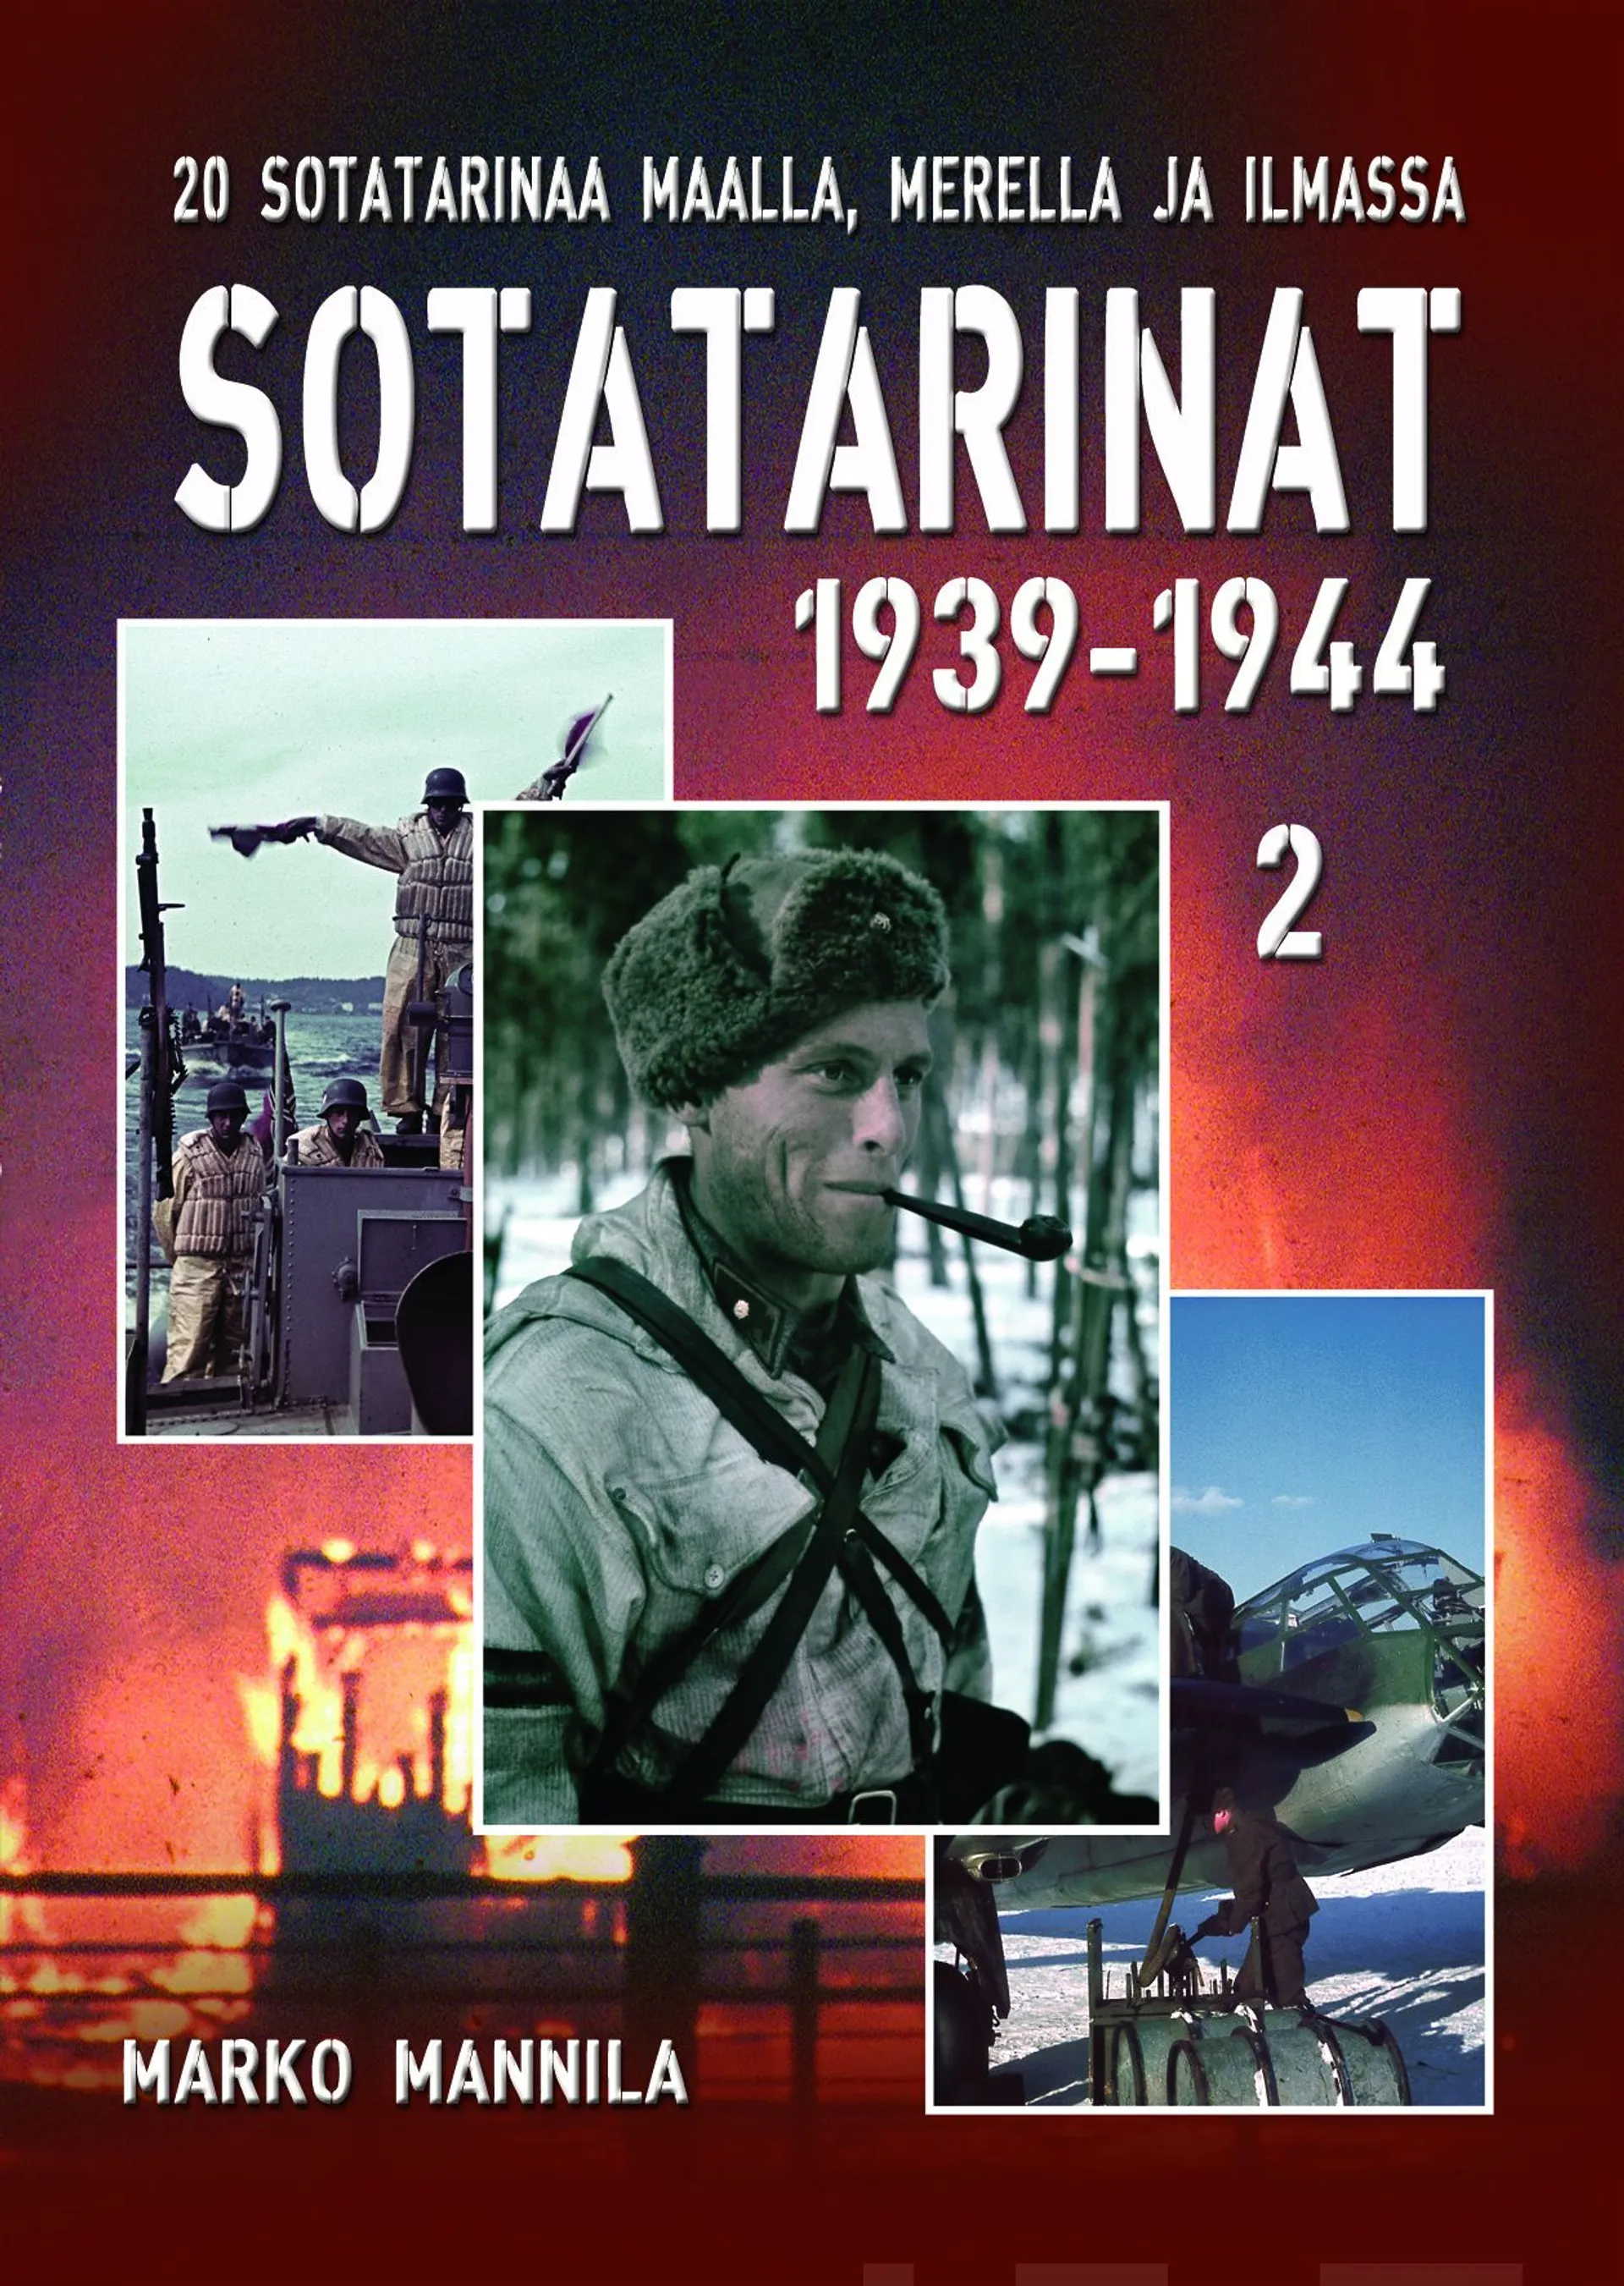 Mannila, Sotatarinat 2 1939-1944 - 20 uskomatonta tarinaa maalta, mereltä ja ilmasta